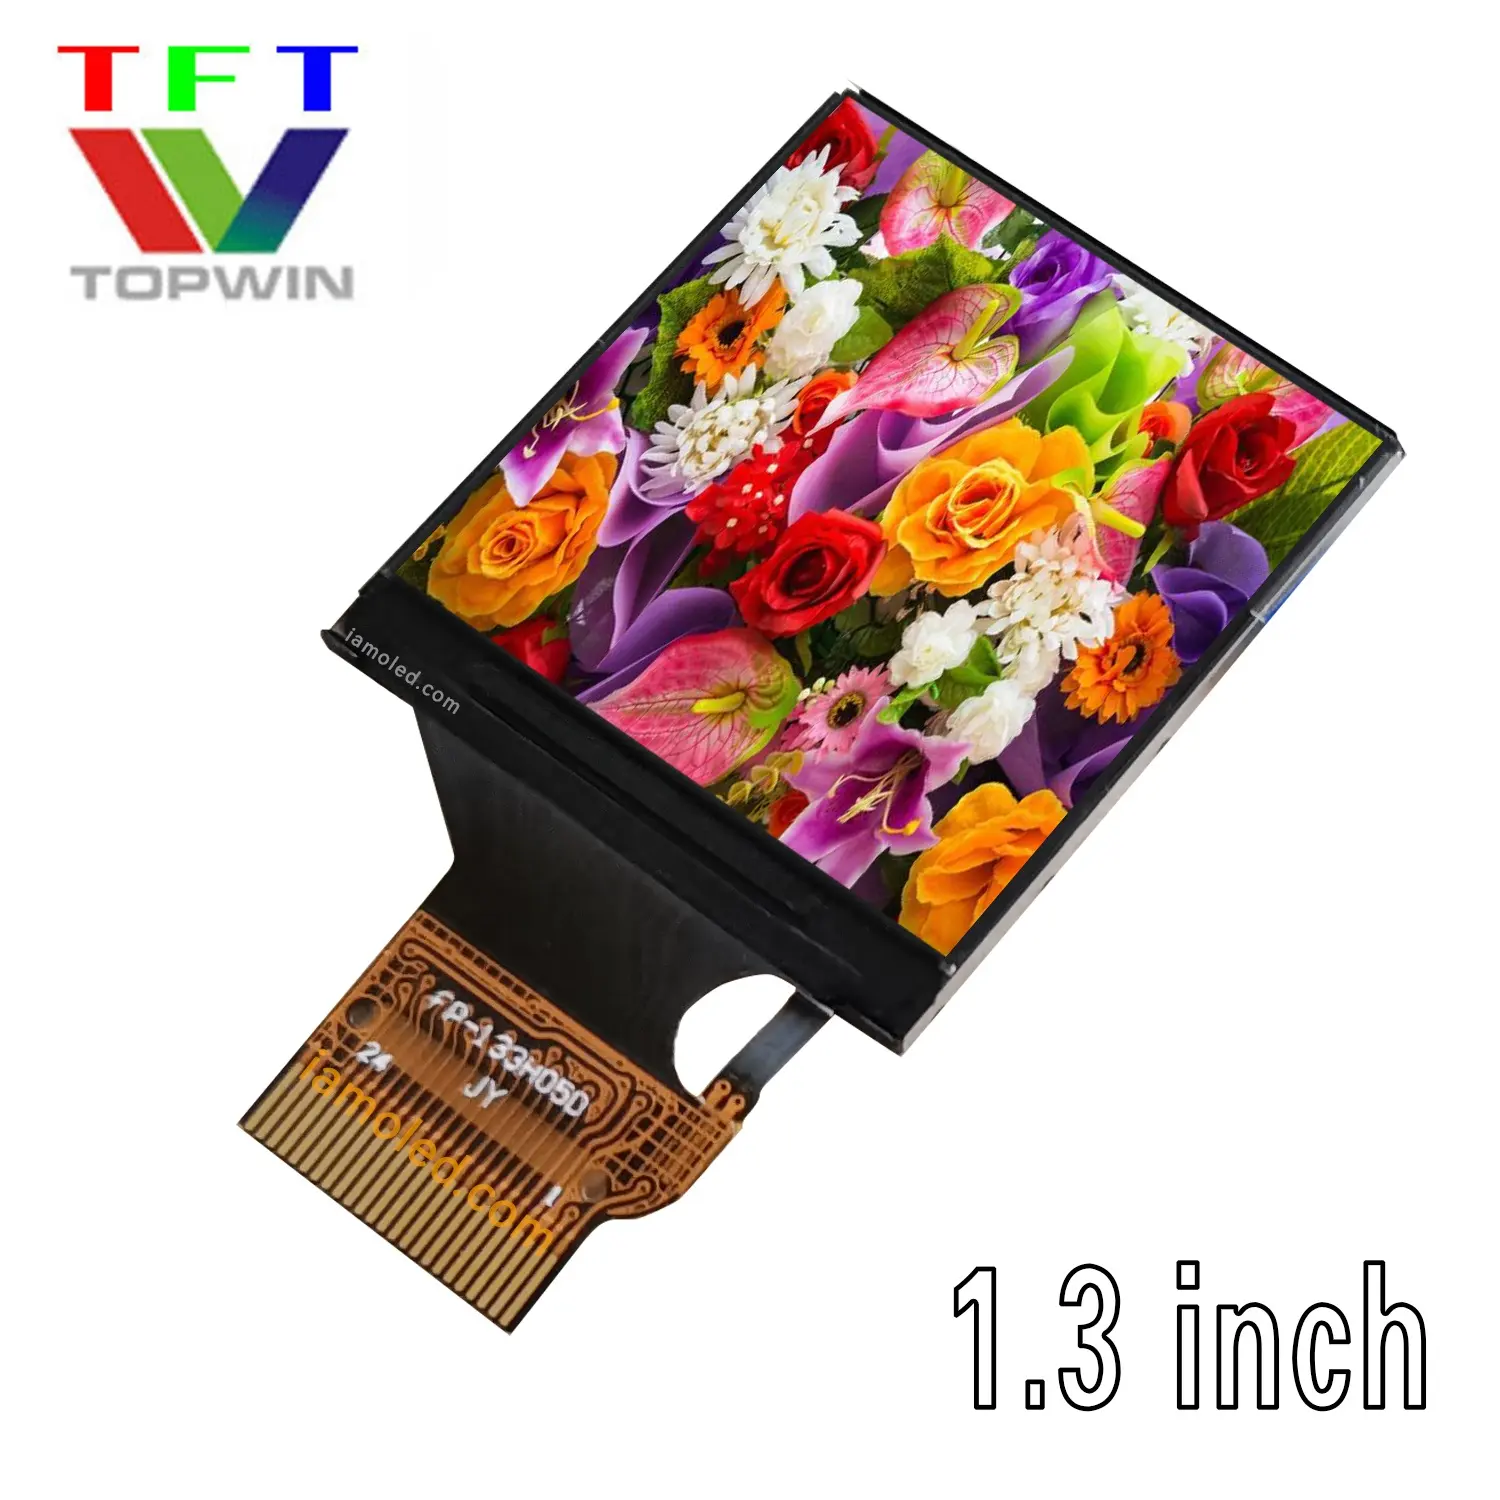 Topwin küçük TFT-LCD ekran 1.3 inç 240x240 piksel çok renkli TW133TIF05 bağlayıcı tipi 4 telli SPI paralel arabirim ekranı